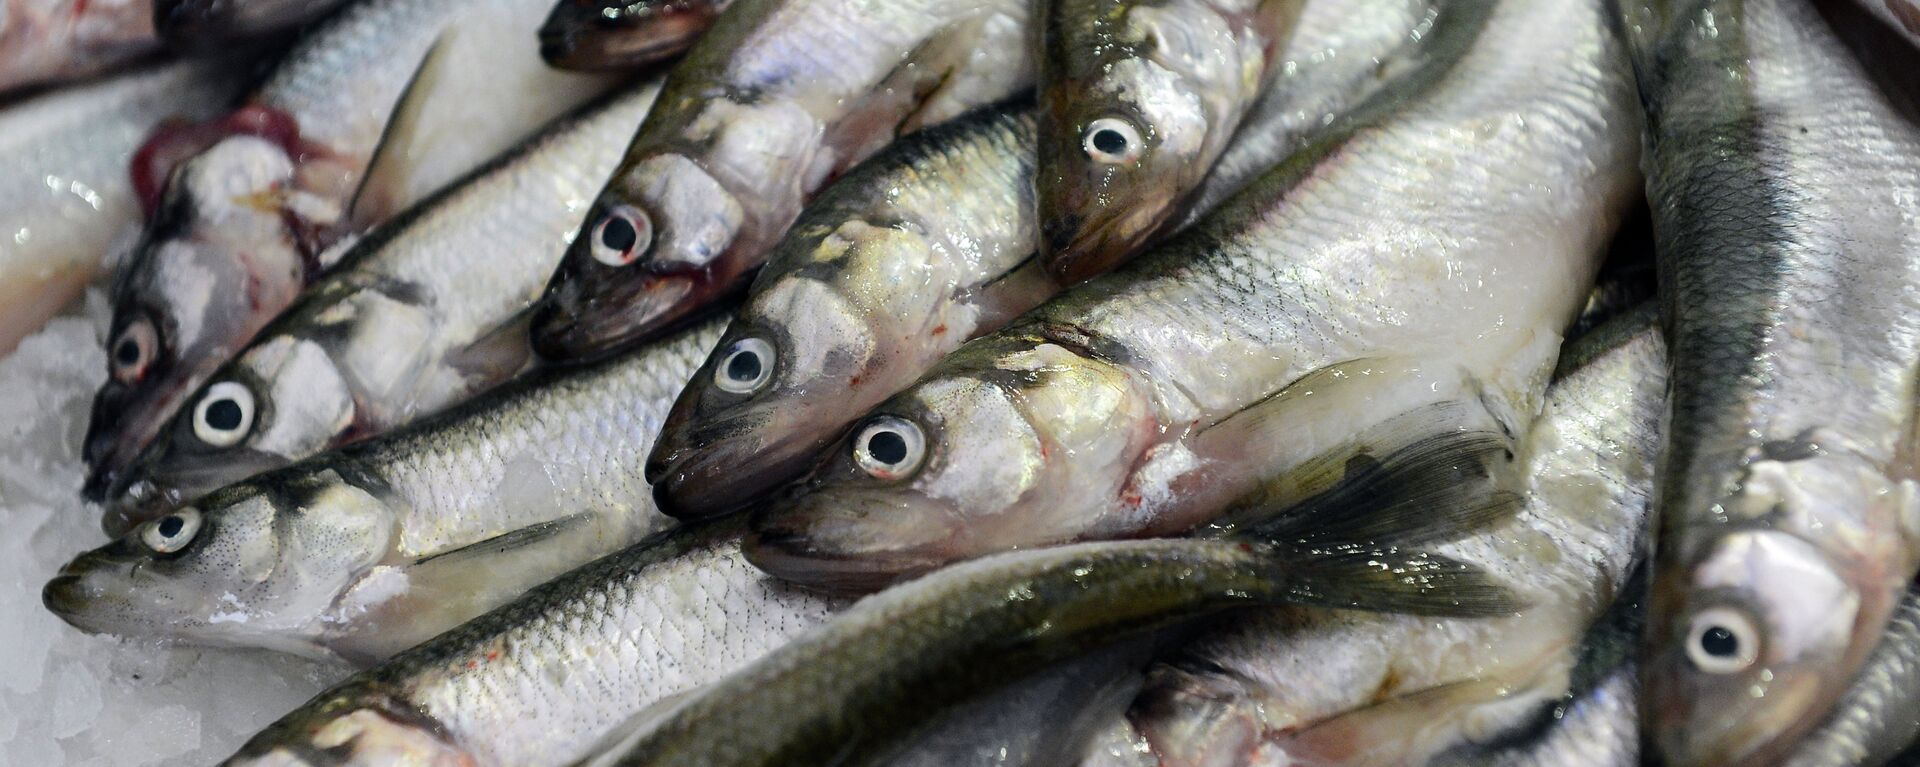 Sve vrste riba sadrže dragocene vitamine. - Sputnik Srbija, 1920, 04.08.2021